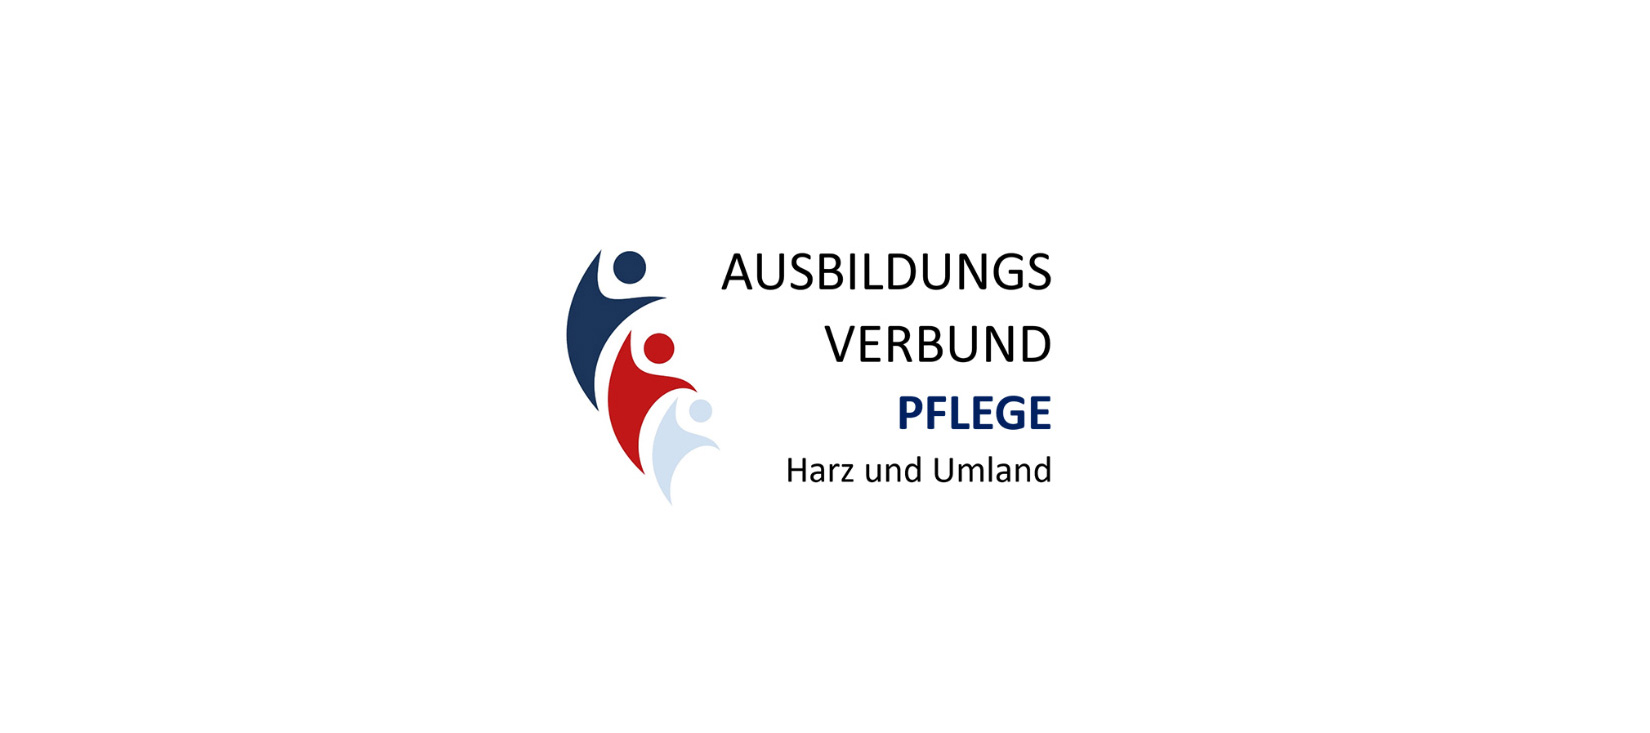 Ausbildungsverbund Pflege für den Landkreis Harz gegründet!